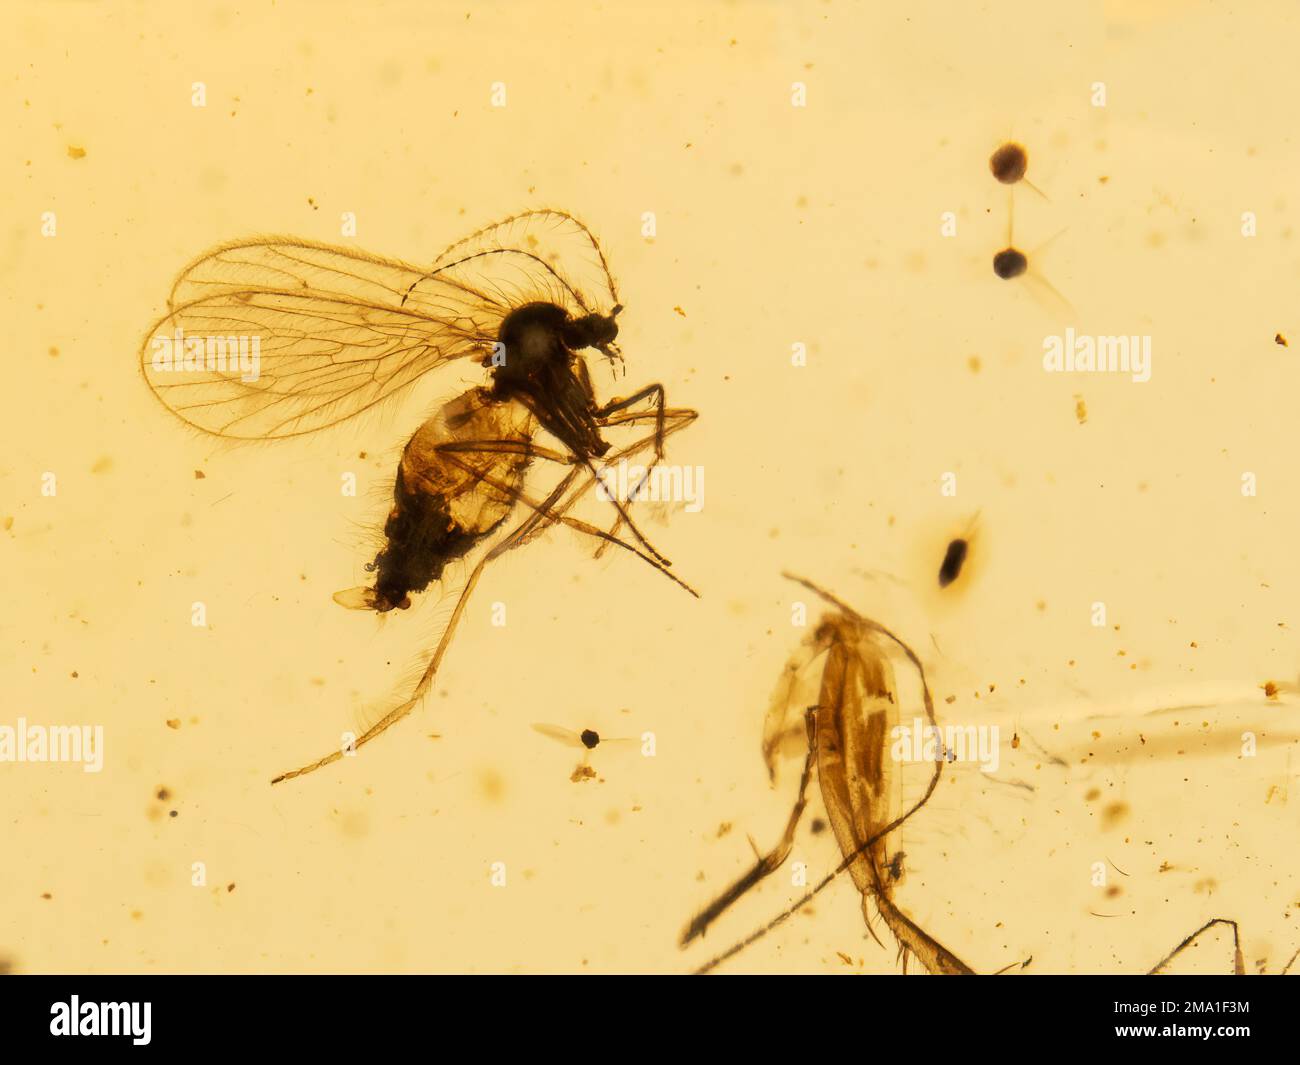 Primo piano di una specie estinta di mosca di scolo (Palaeoparasycorax suppus) conservata all'interno di un pezzo di 99 milioni di anni di ambra birmana (albero fossilizzato Foto Stock